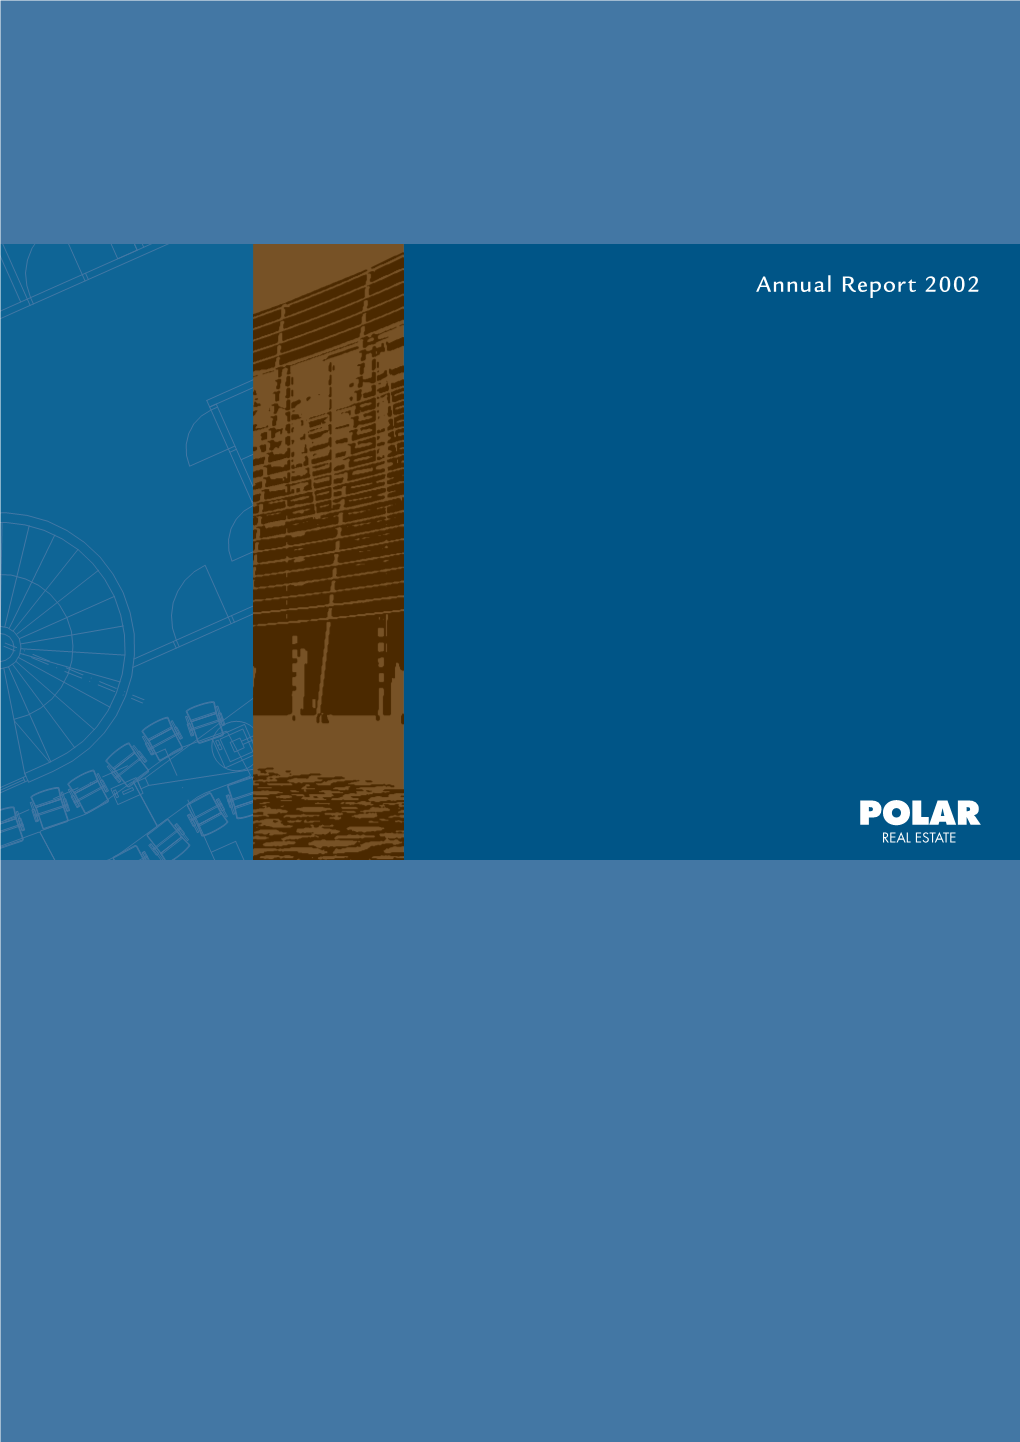 Polar Real Estate Annual Report 2002